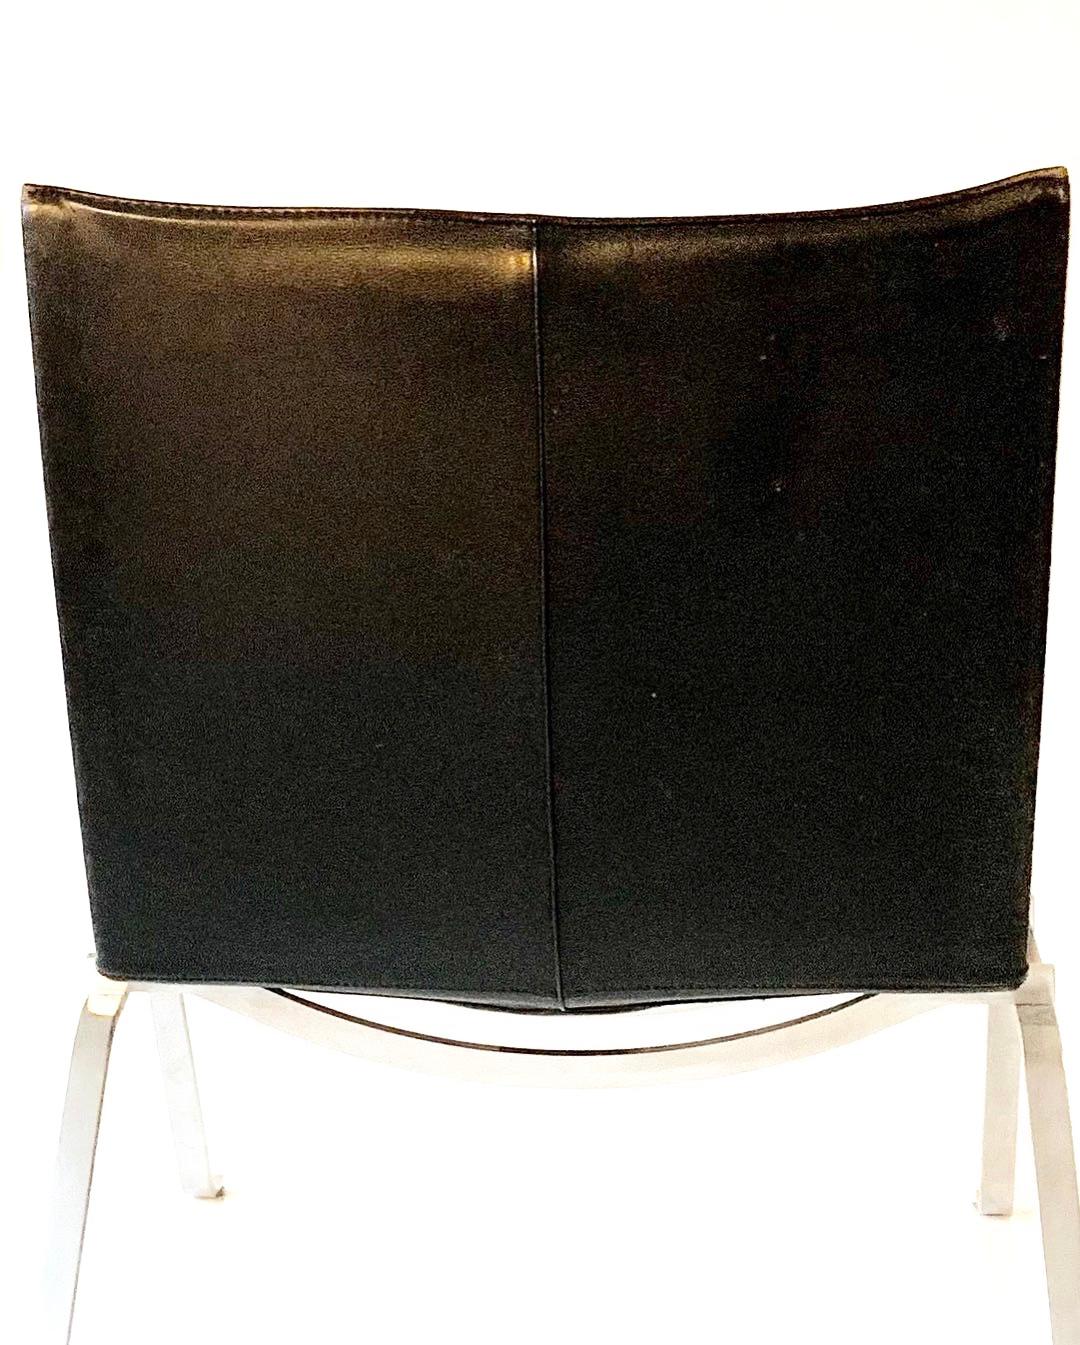 Poul Kjærholm PK 22 Vintage Black Leather Chair For Sale 8